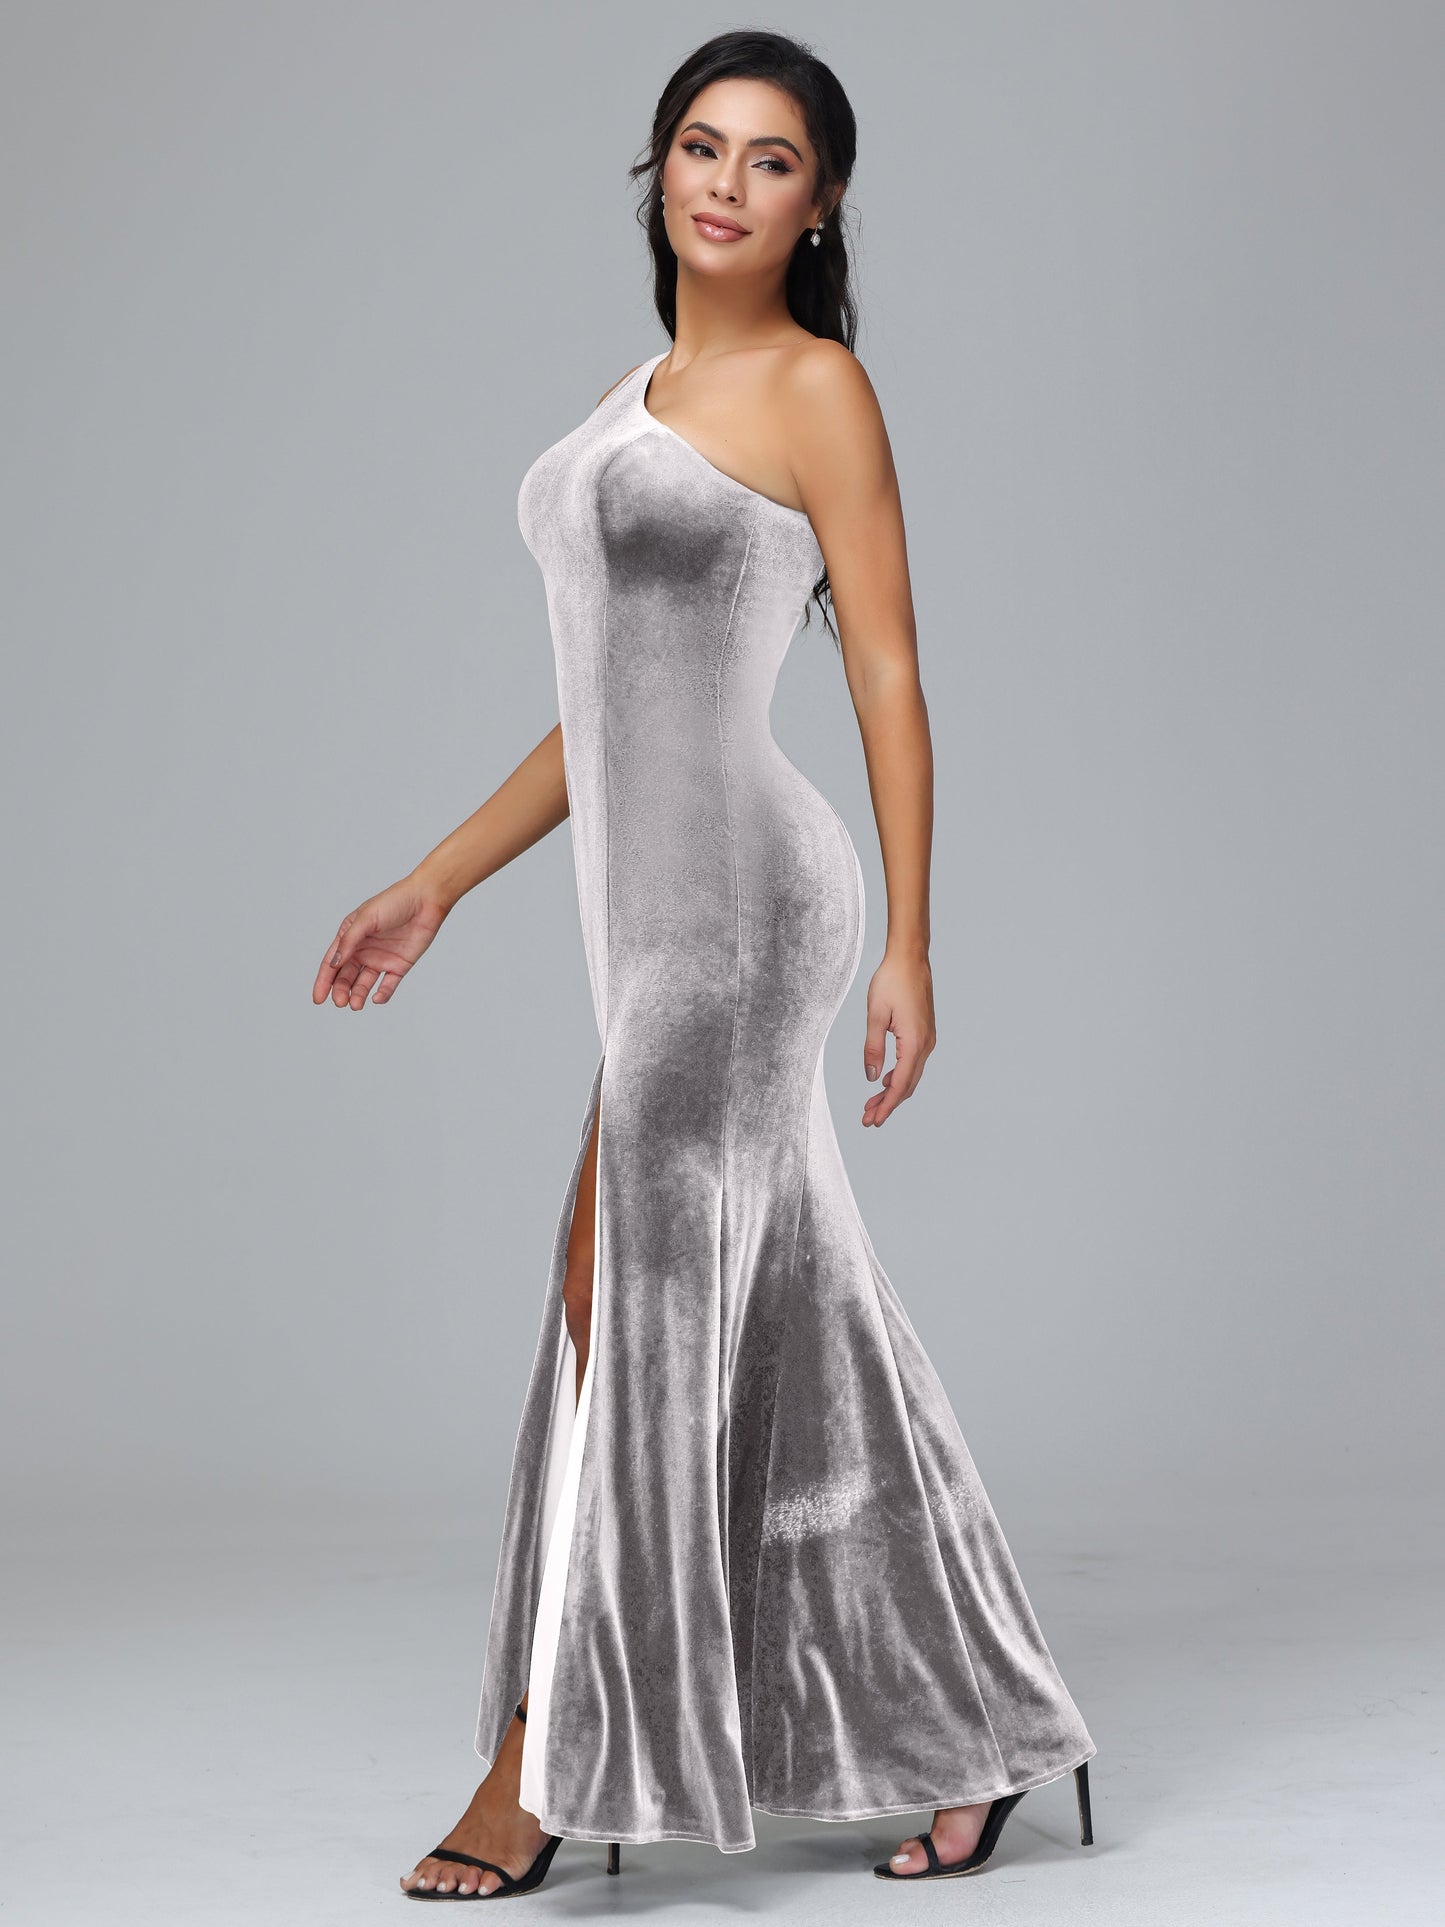 Sheath/Column One Shoulder Long Plus Size Bridesmaid Dresses With Split